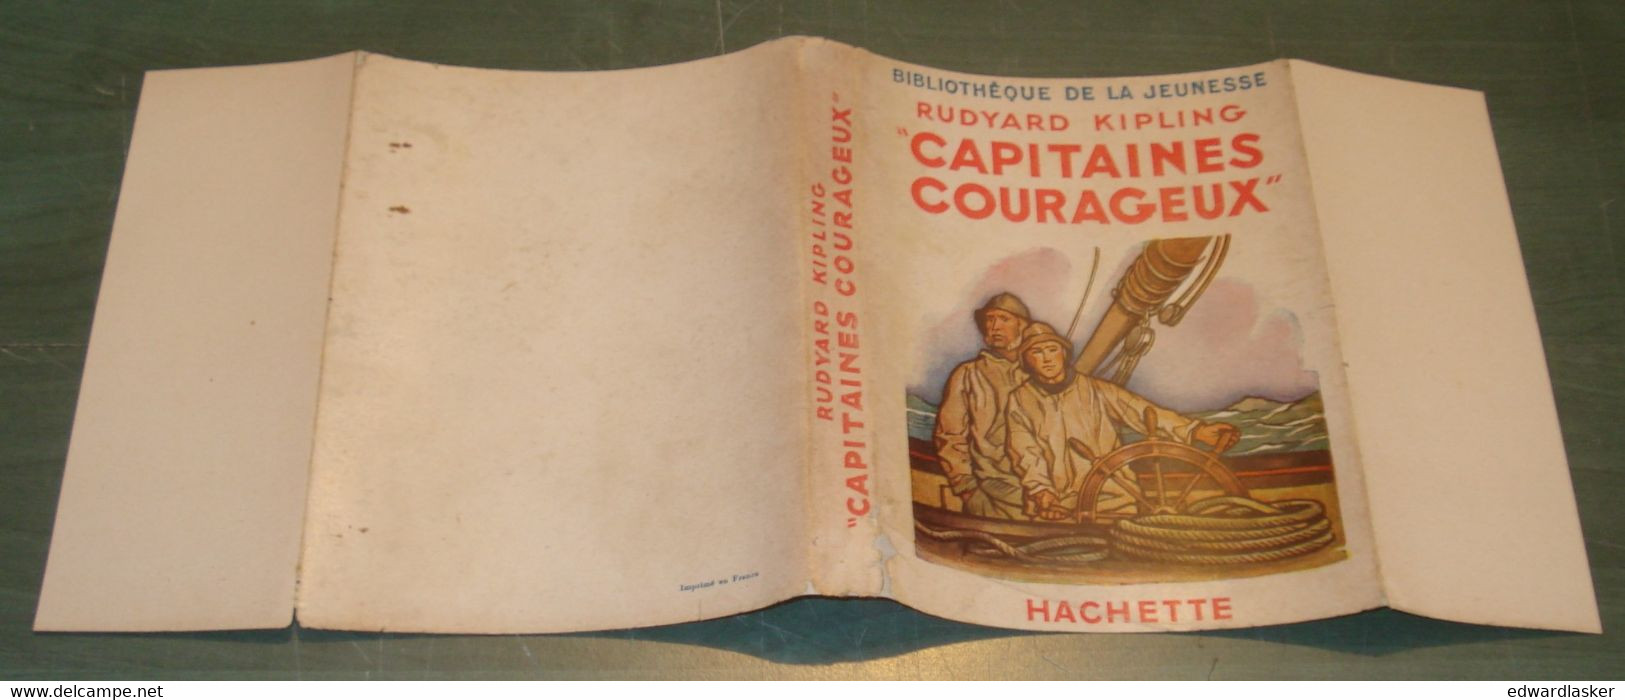 BIBLIOTHEQUE de la JEUNESSE : Capitaines Courageux /R. Kipling - Jaquette 1947